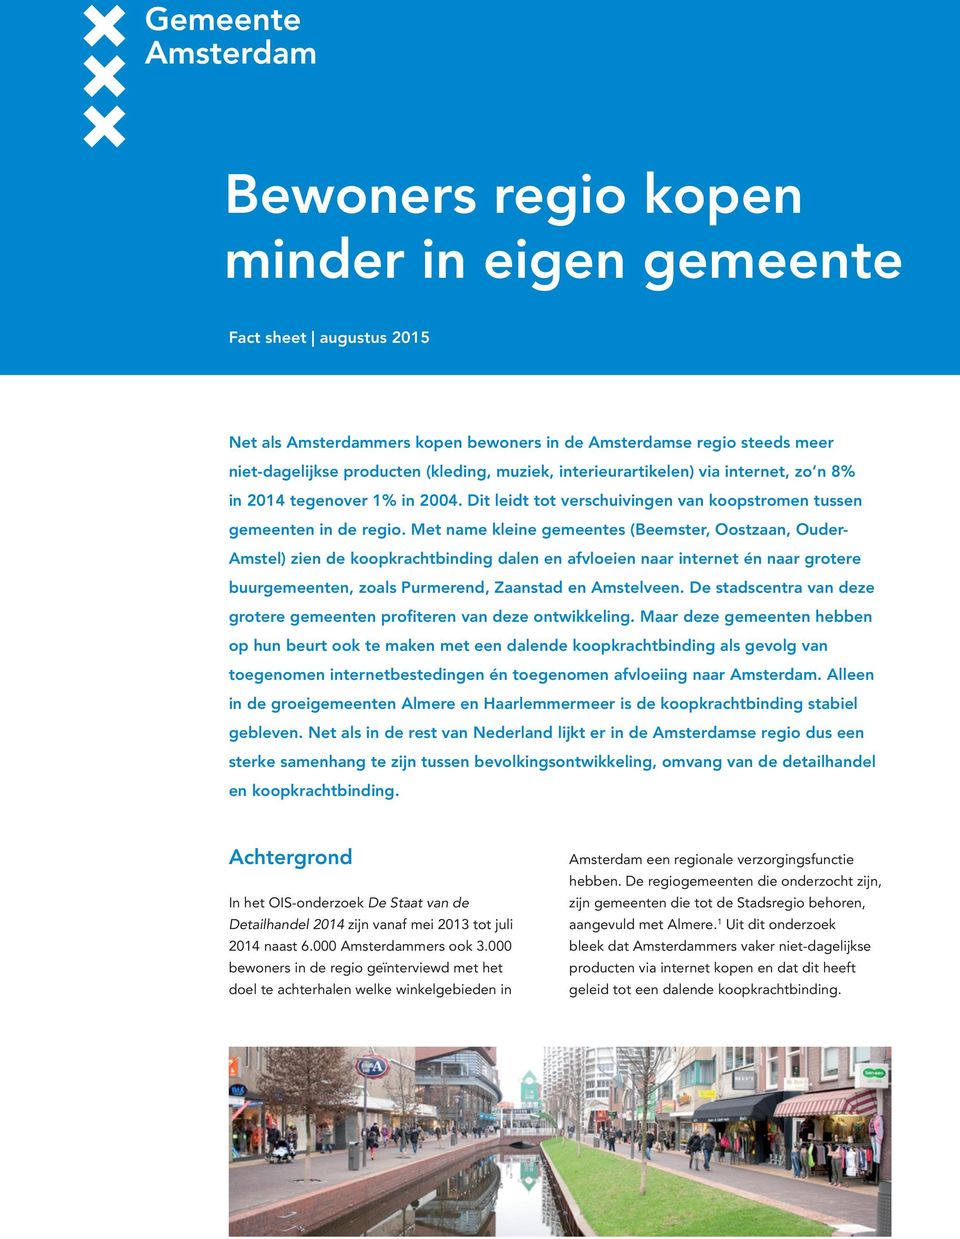 Met name kleine gemeentes (Beemster, Oostzaan, Ouder- Amstel) zien de koopkrachtbinding dalen en afvloeien naar internet én naar grotere buurgemeenten, zoals Purmerend, Zaanstad en Amstelveen.